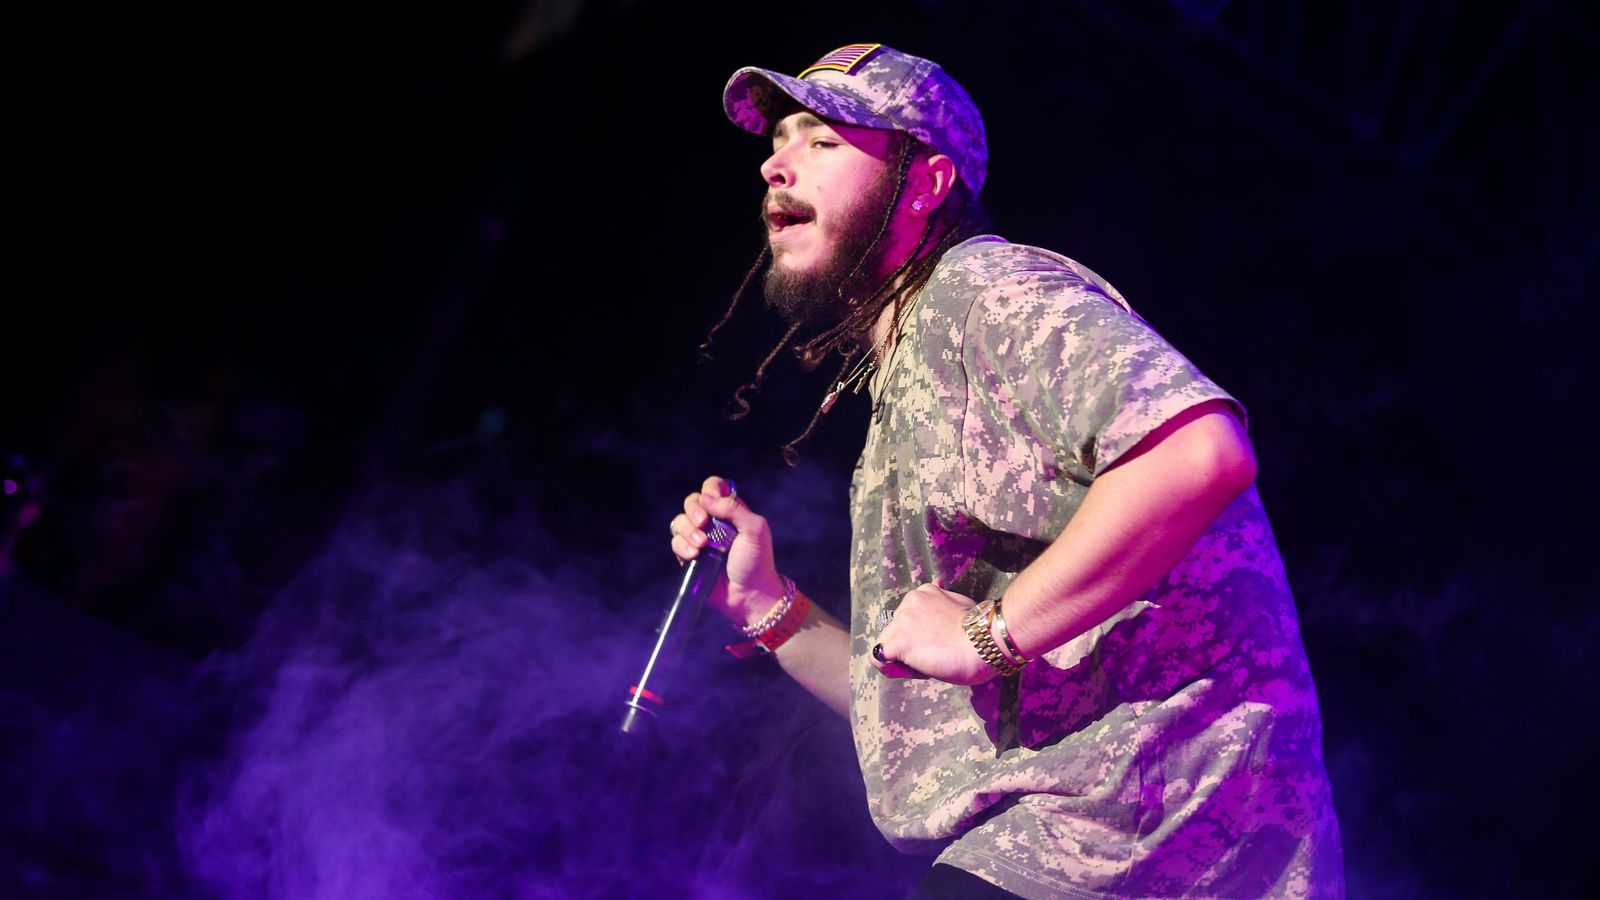 Le rappeur Post Malone annule un concert après avoir été hospitalisé en raison de « difficultés respiratoires » |  Actualités Ents & Arts